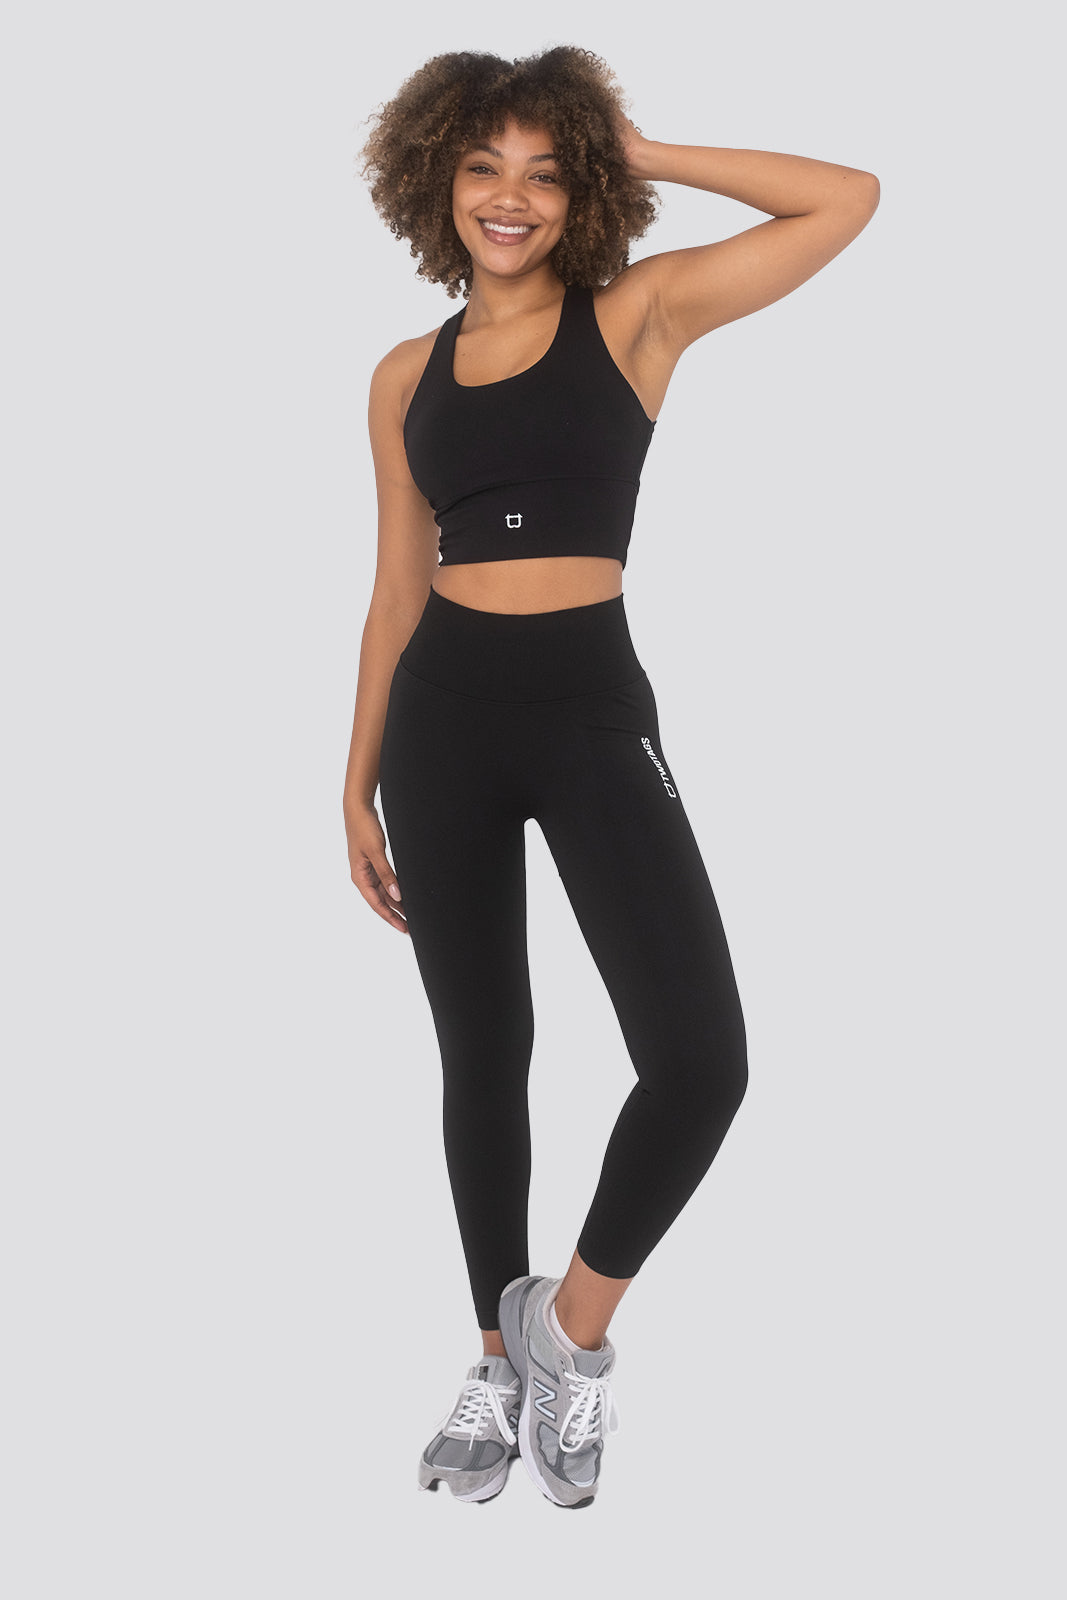 gymshark flex high waisted leggings | eBay